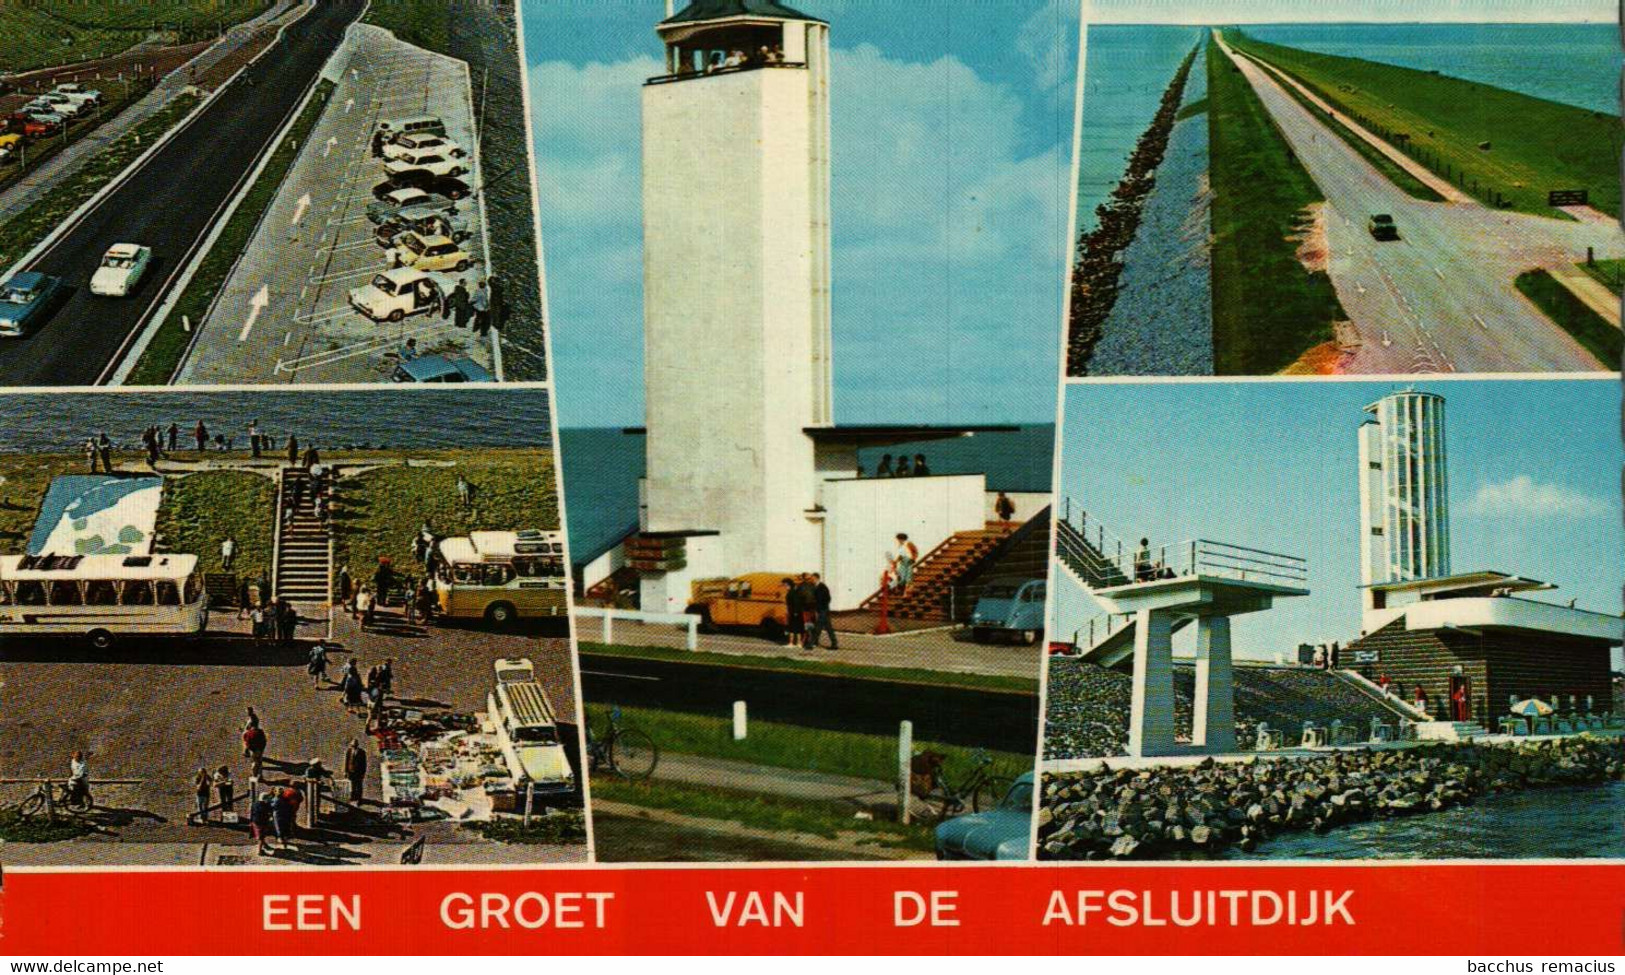 EEN GROET VAN DE AFSLUITDIJK - Den Oever (& Afsluitdijk)